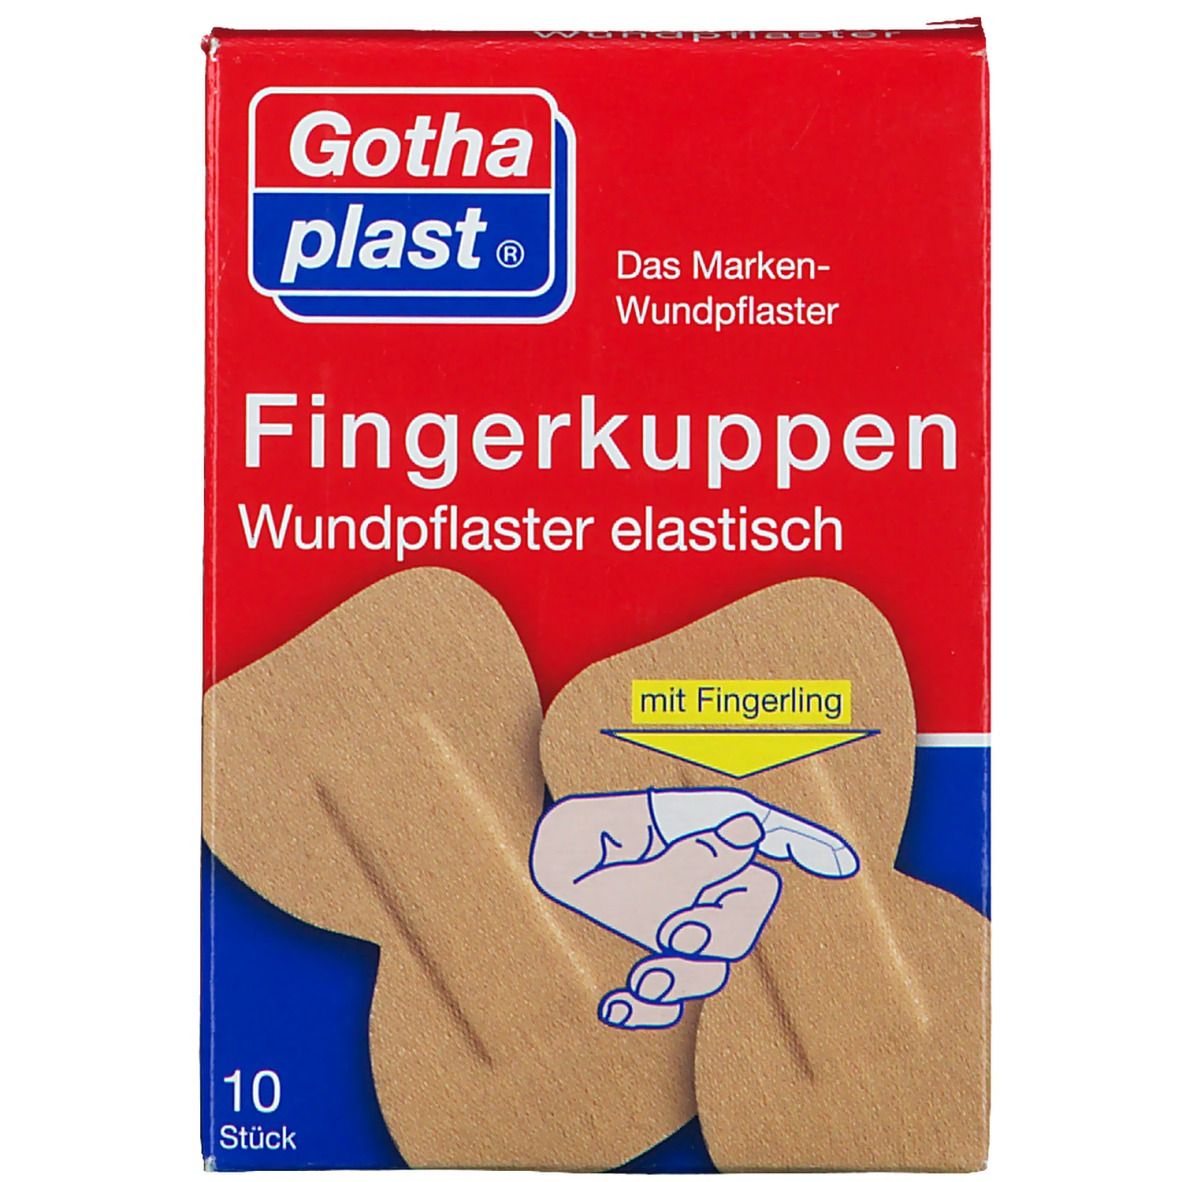 Gothaplast® Fingerkuppenpflaster mit Fingerling